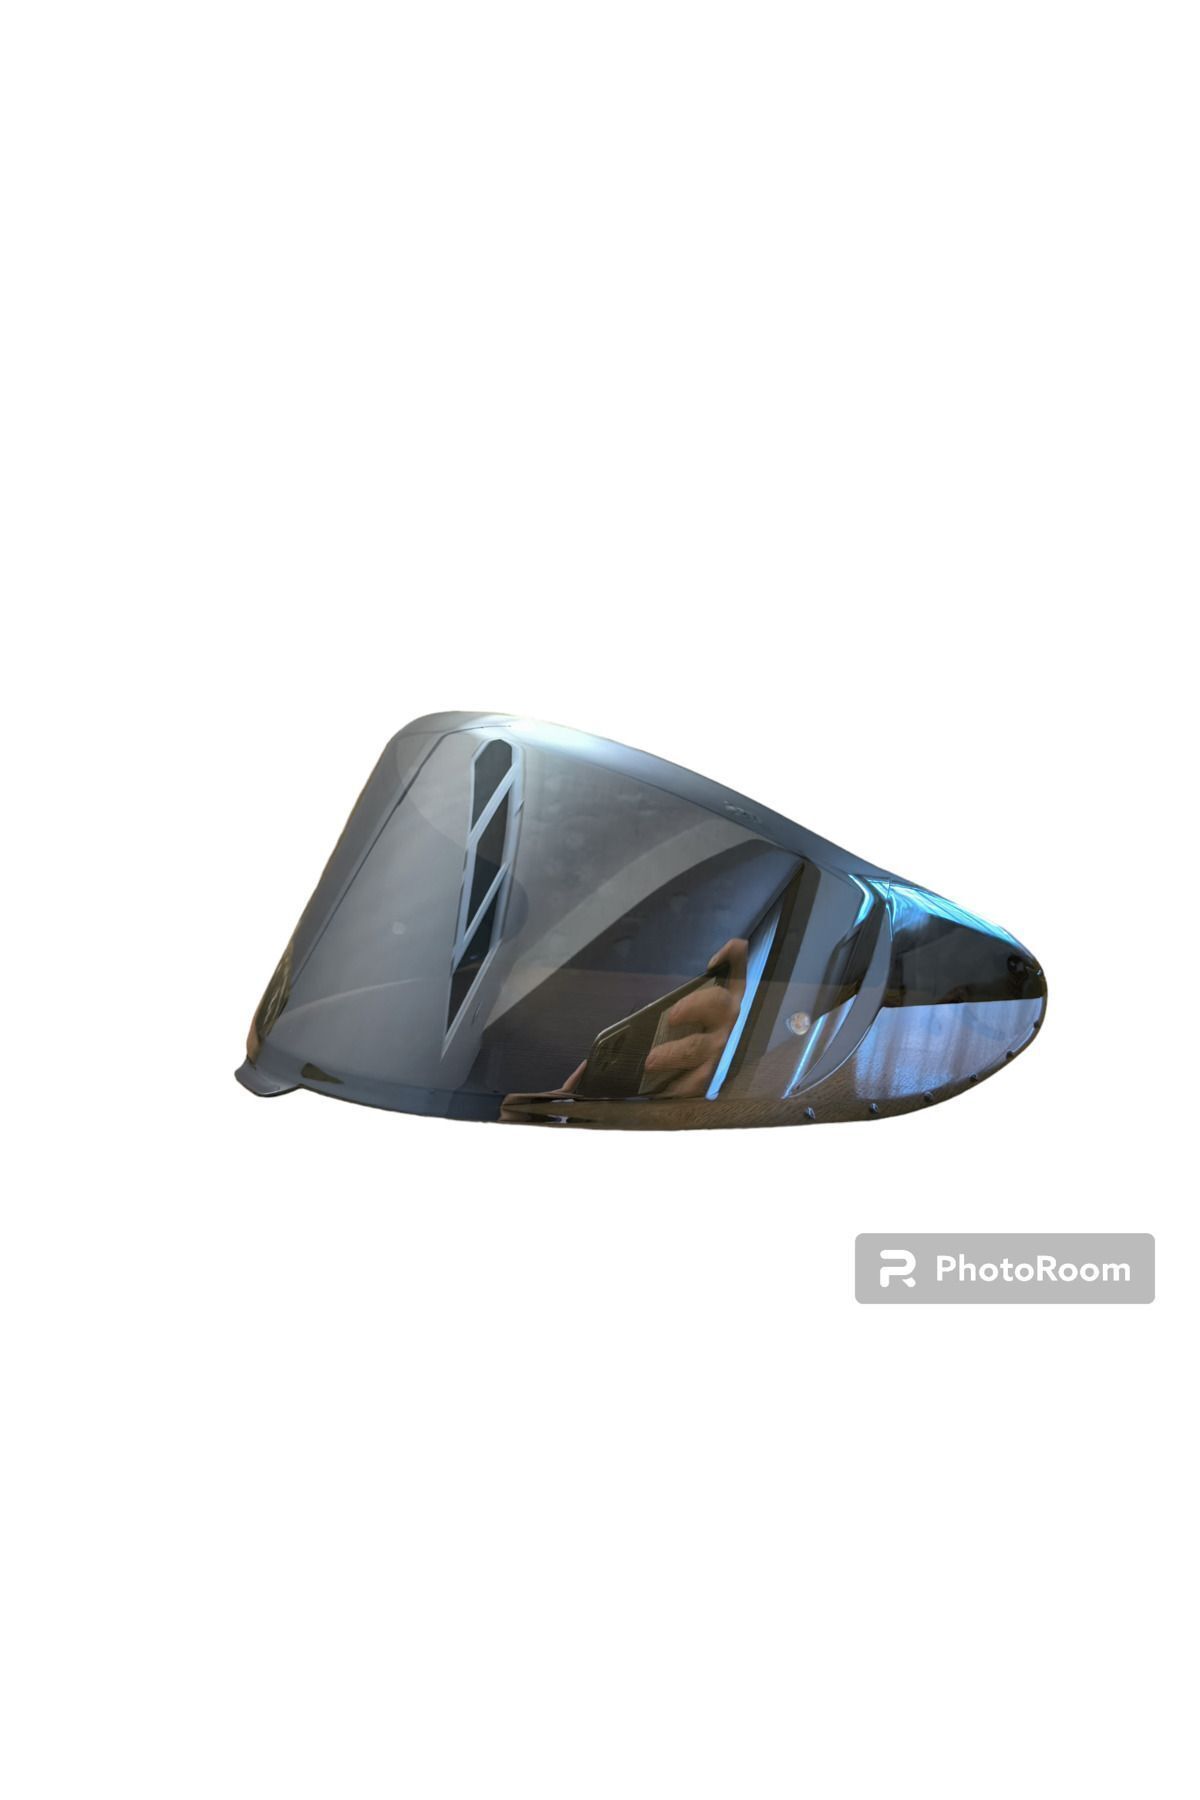 AGV Shoei Nxr 2 & X-spr Pro Uyumlu Kask Vizörü Iridyum Silver (GÜMÜŞ)